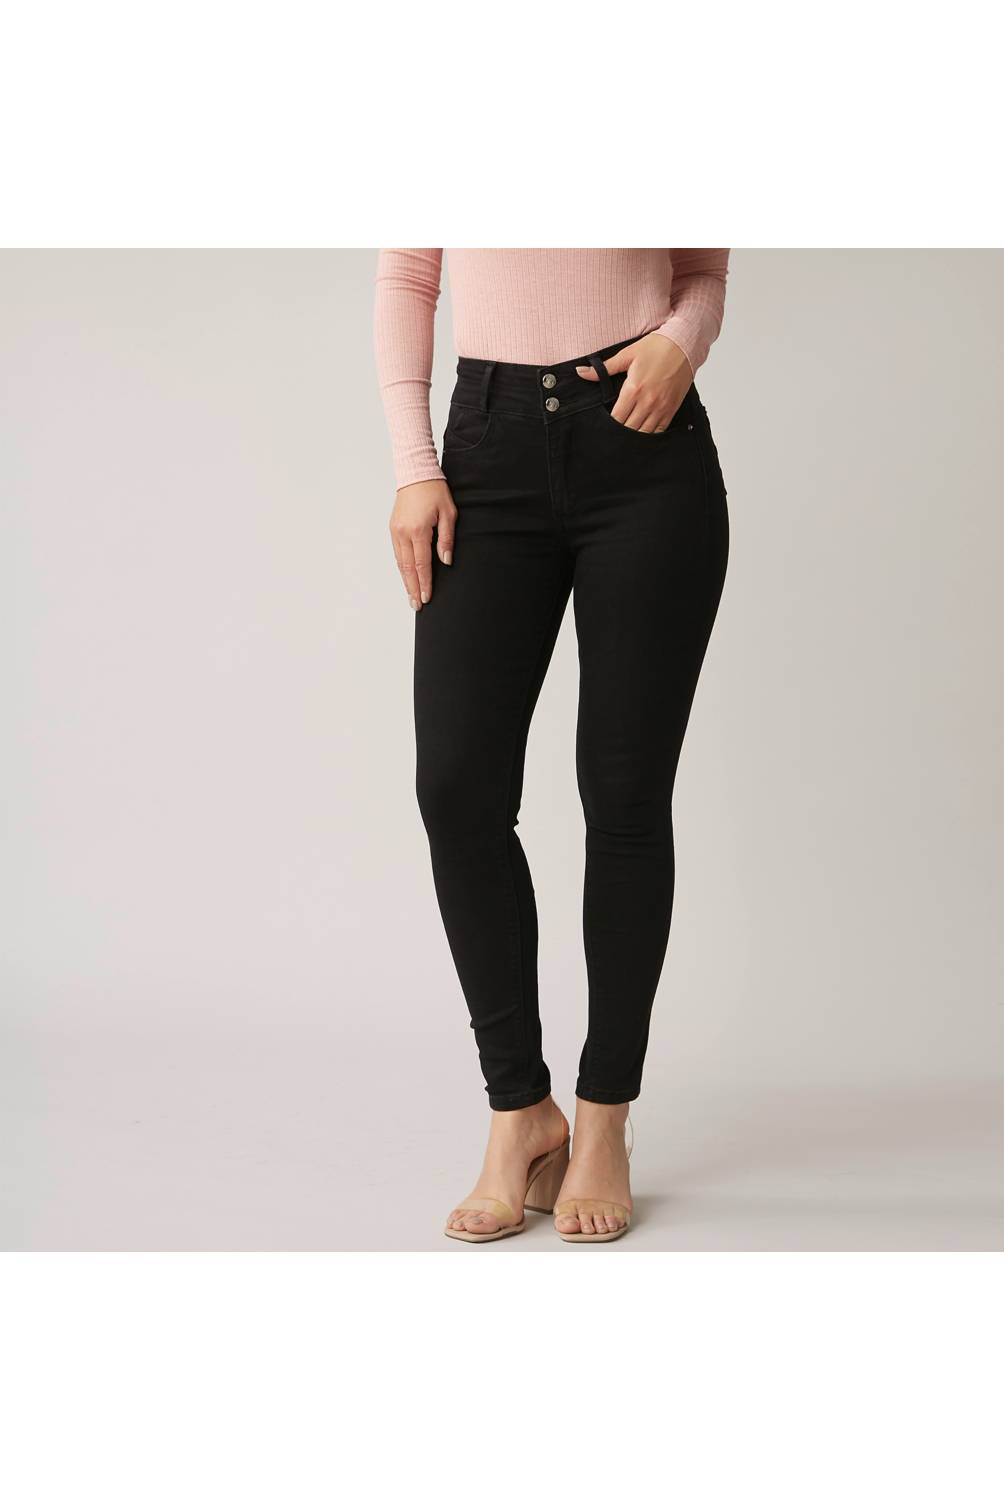 MOSSIMO/Jeans Skinny Tiro Alto Mujer Mossimo